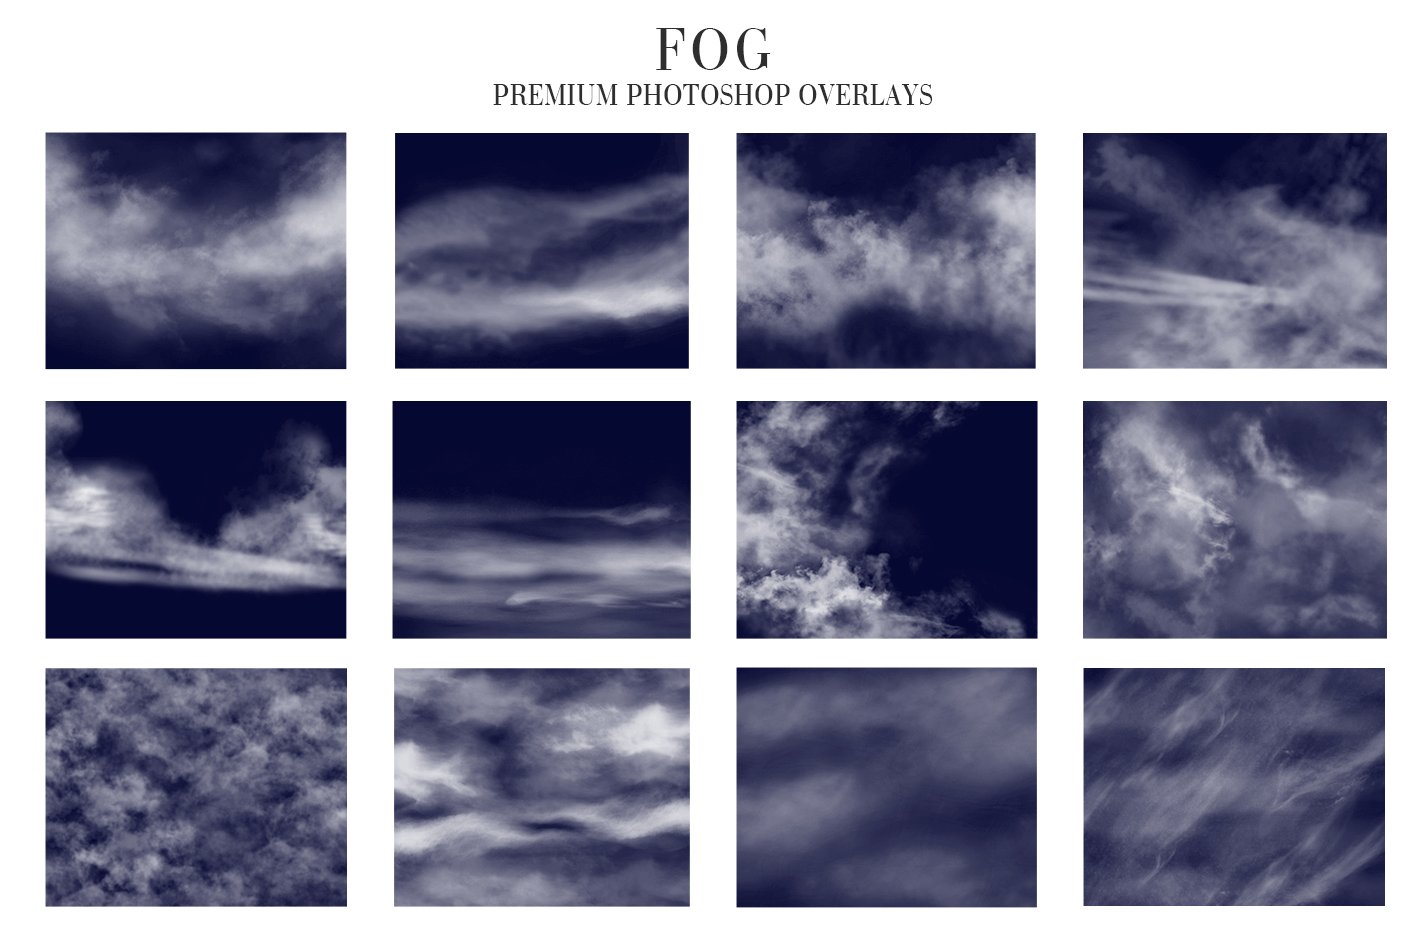 Fog Overlays Photoshoppreview image.